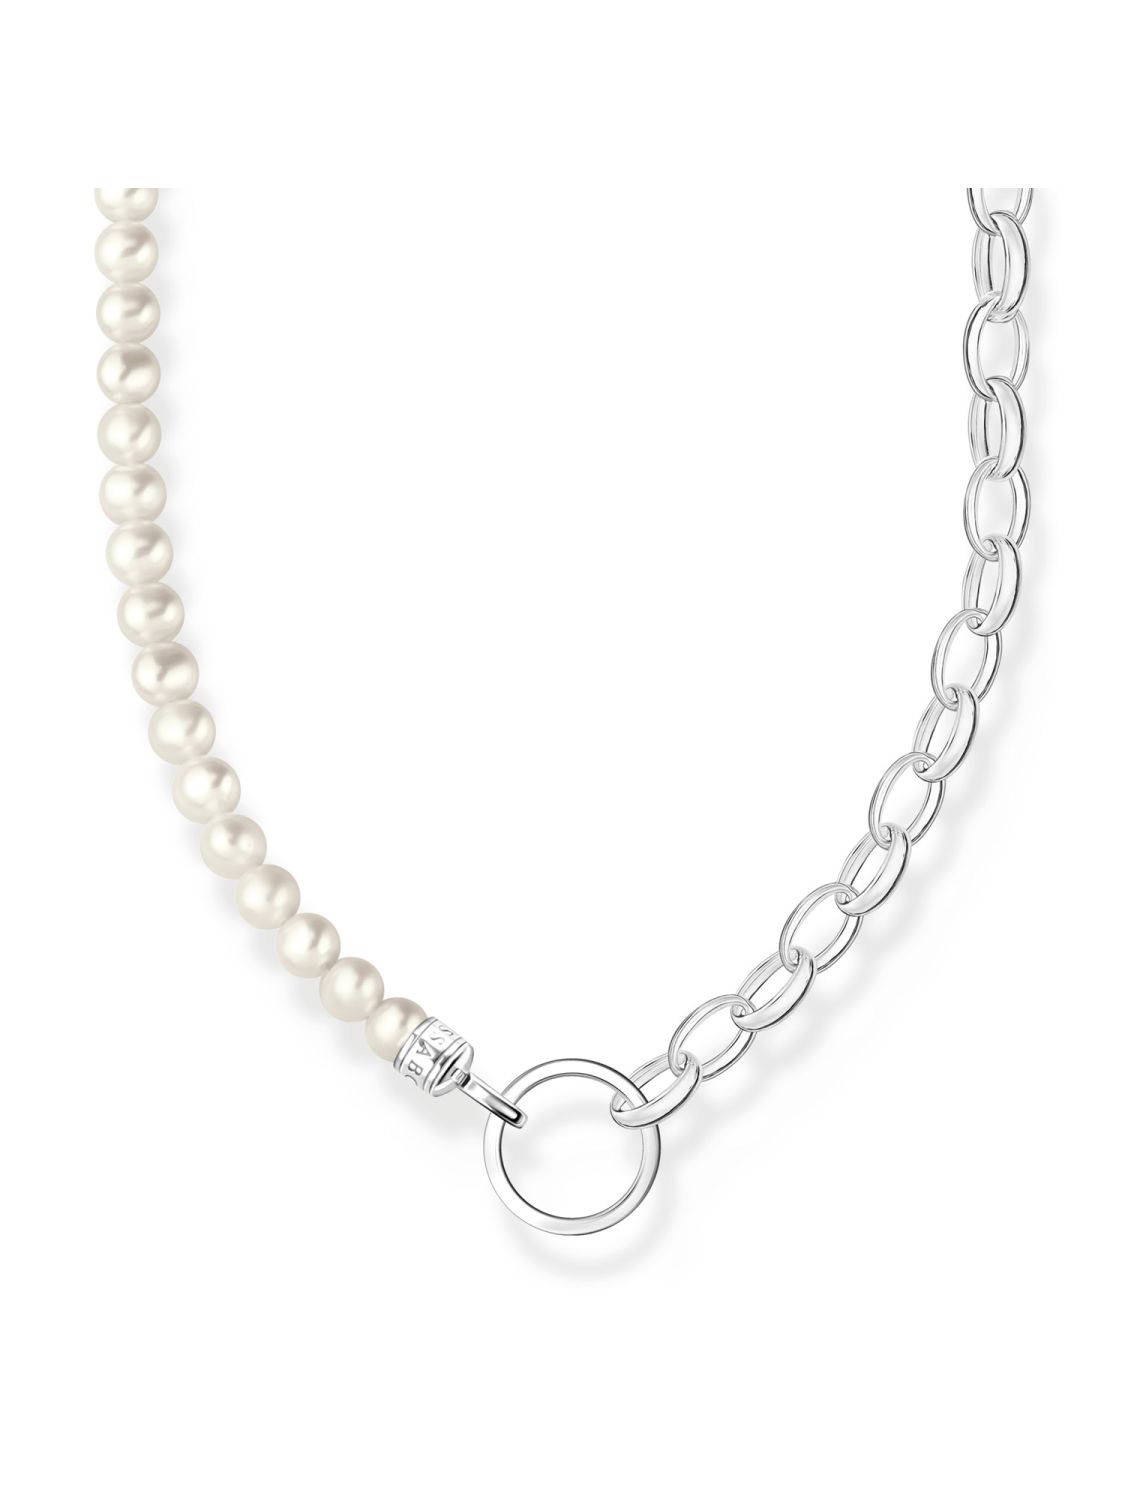 Thomas Sabo Damen-Kette für Charms Silber und Weiße Perlen  KE2188-082-14-L45v • uhrcenter